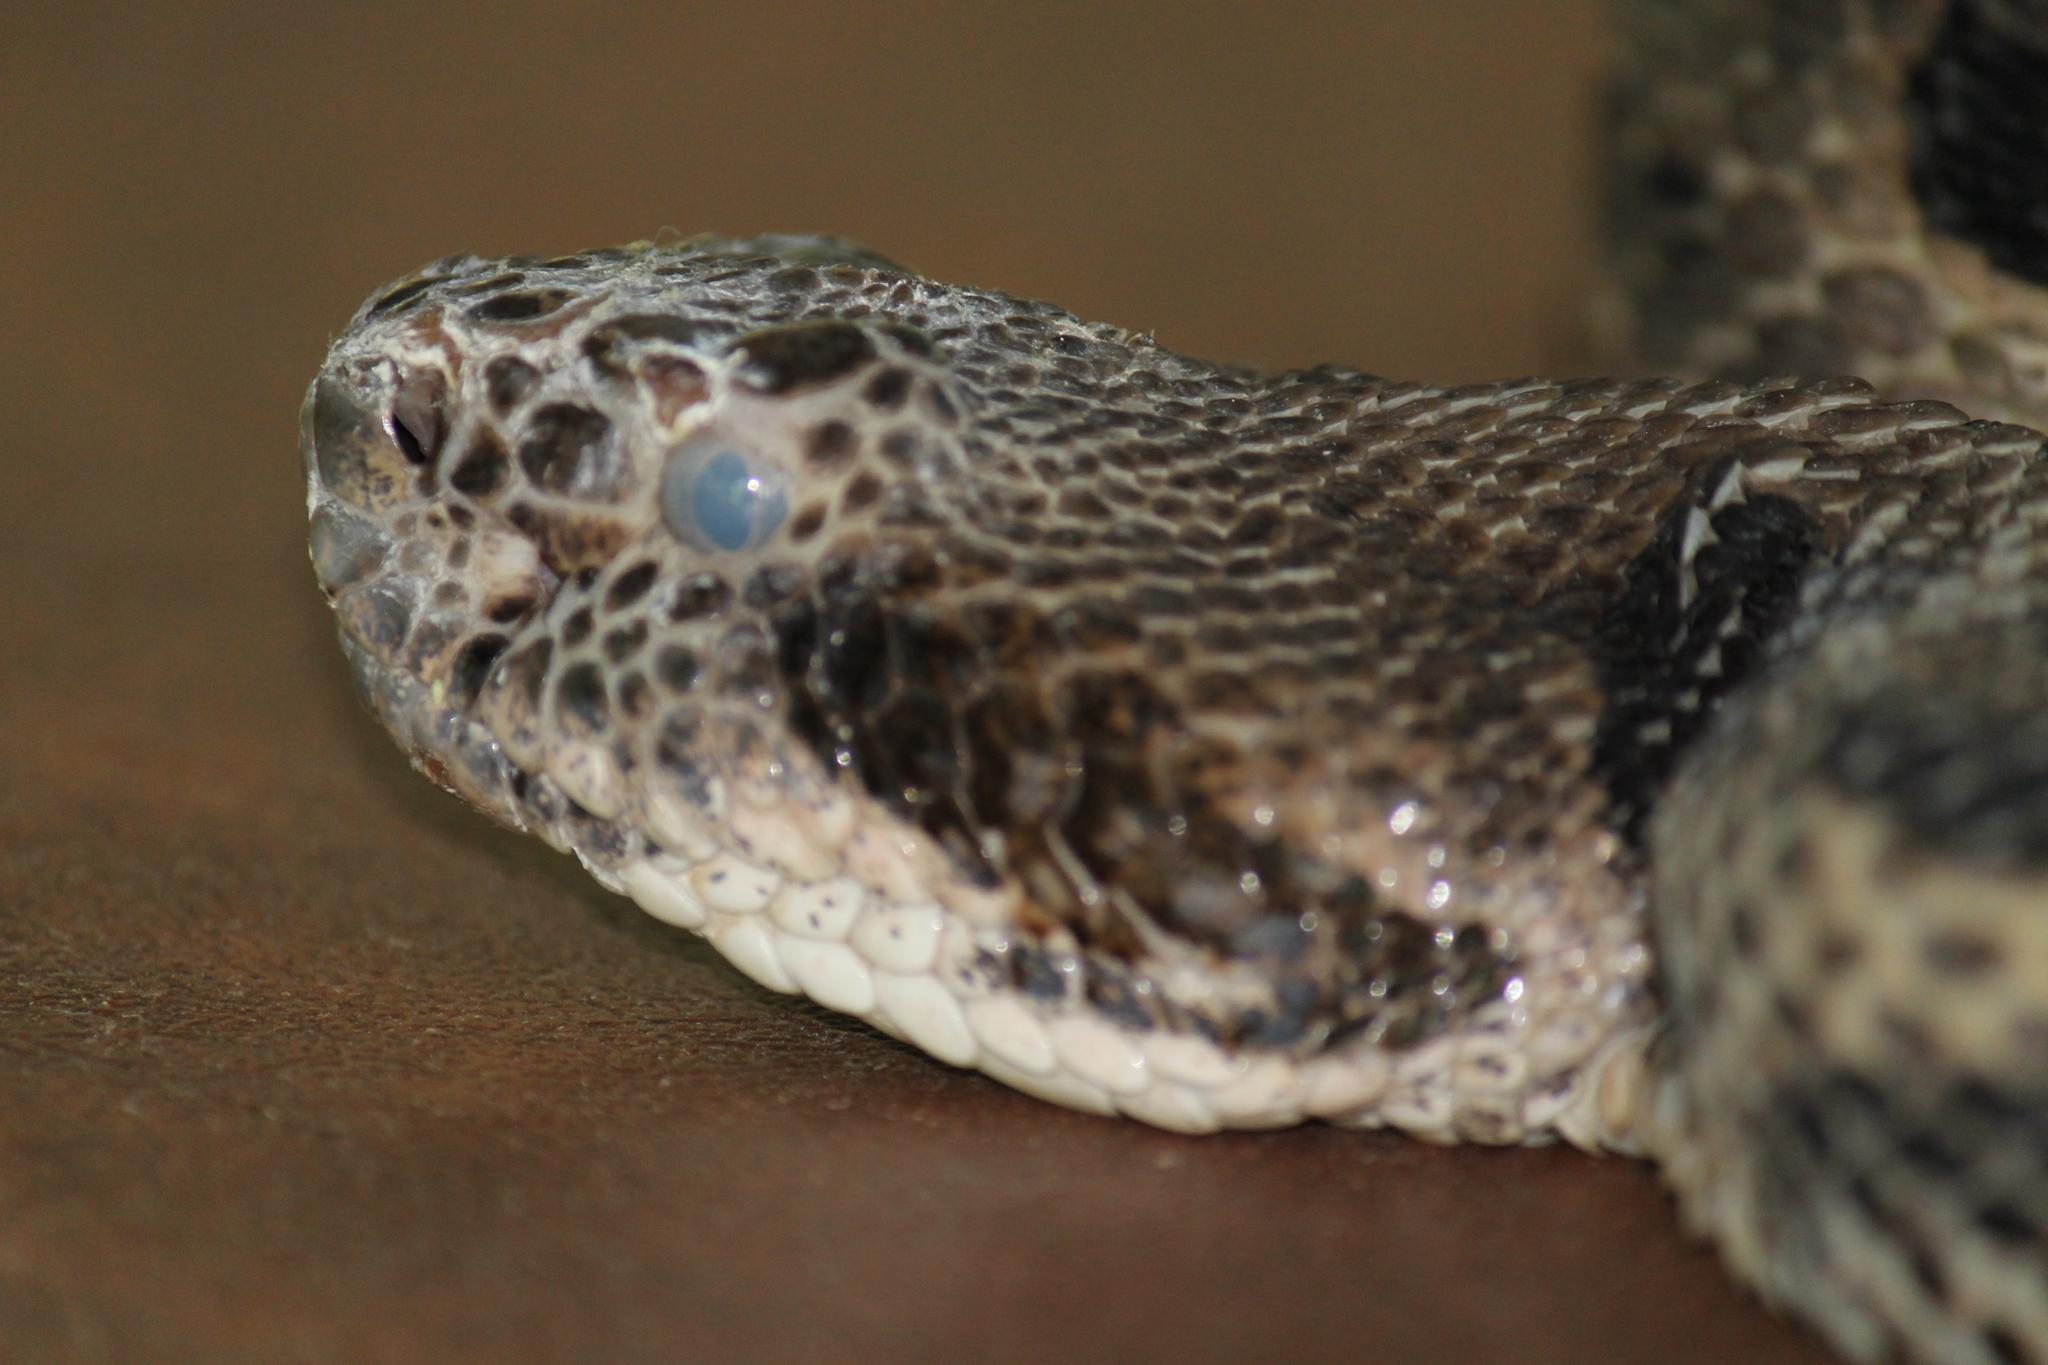 Quelles sont les maladies les plus courantes pour les serpents ?